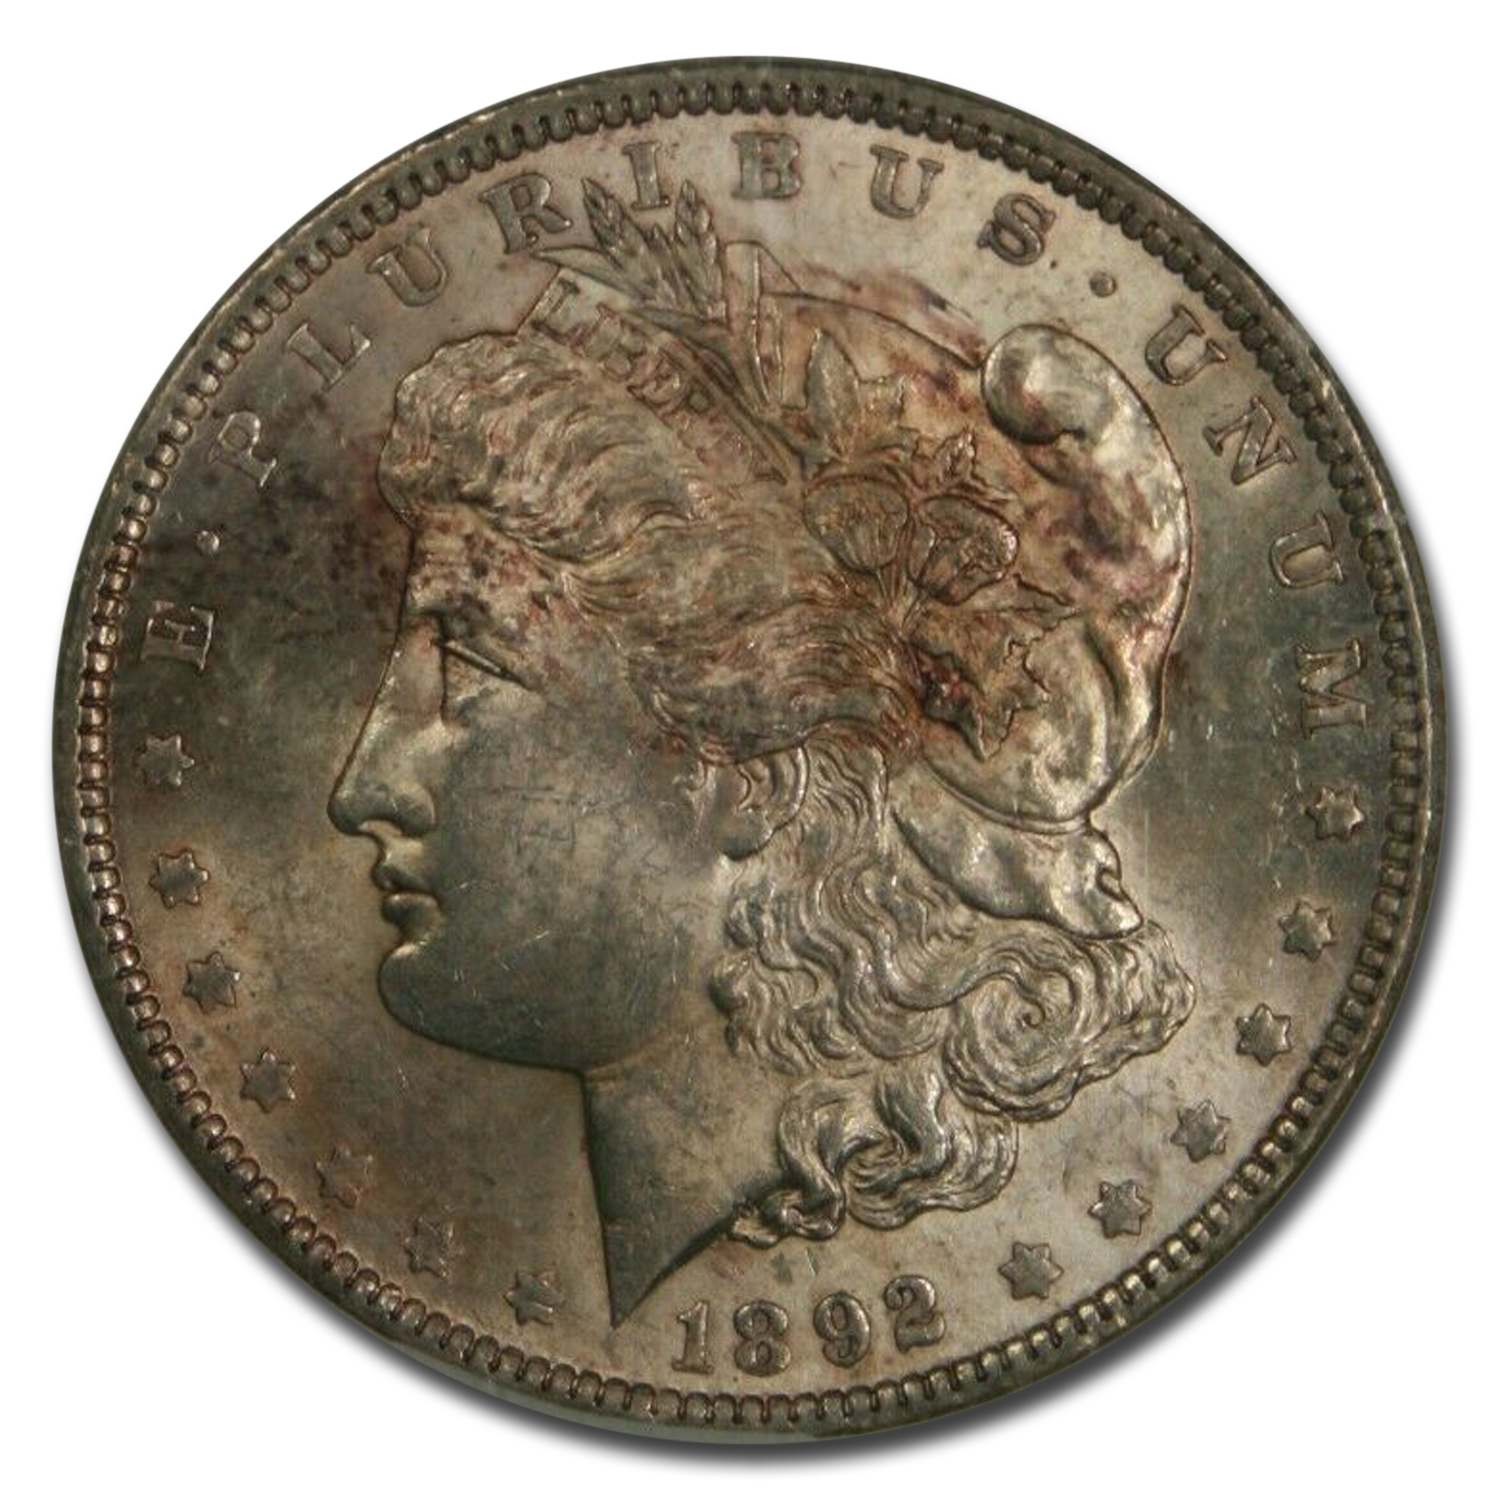 Buy 1892 Morgan Dollar MS-61 NGC